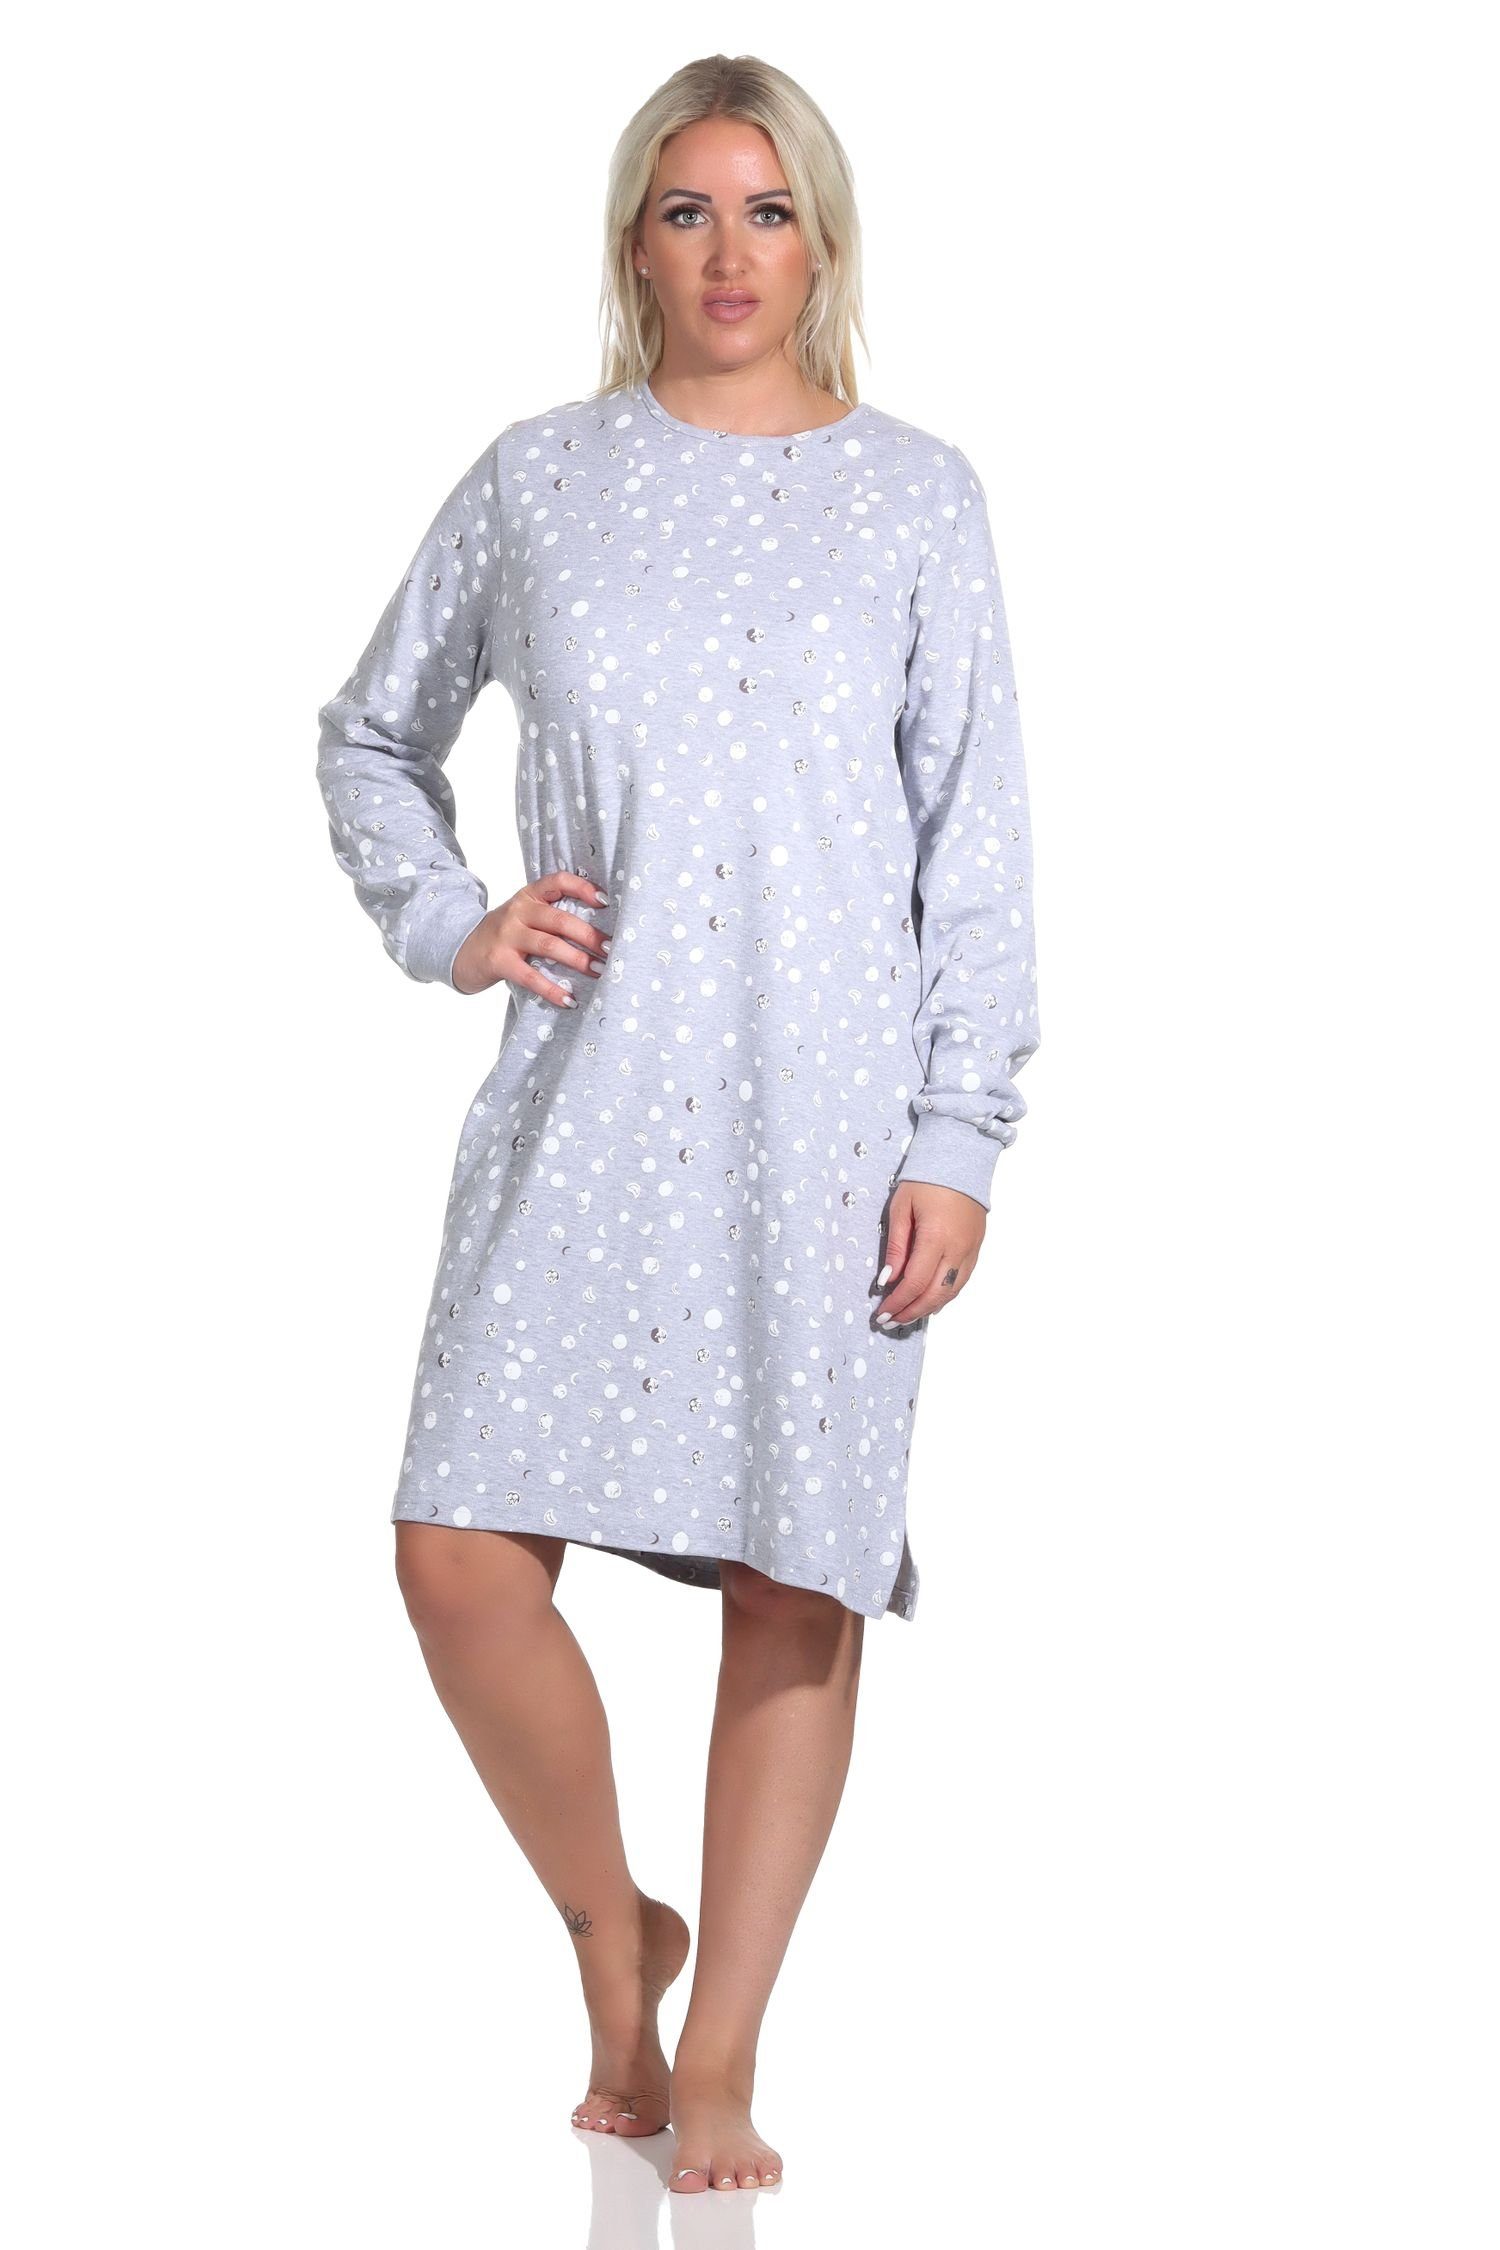 Normann Nachthemd Damen langarm Interlock mit Kuschel Bündchen Nachthemd grau-melange Qualität in